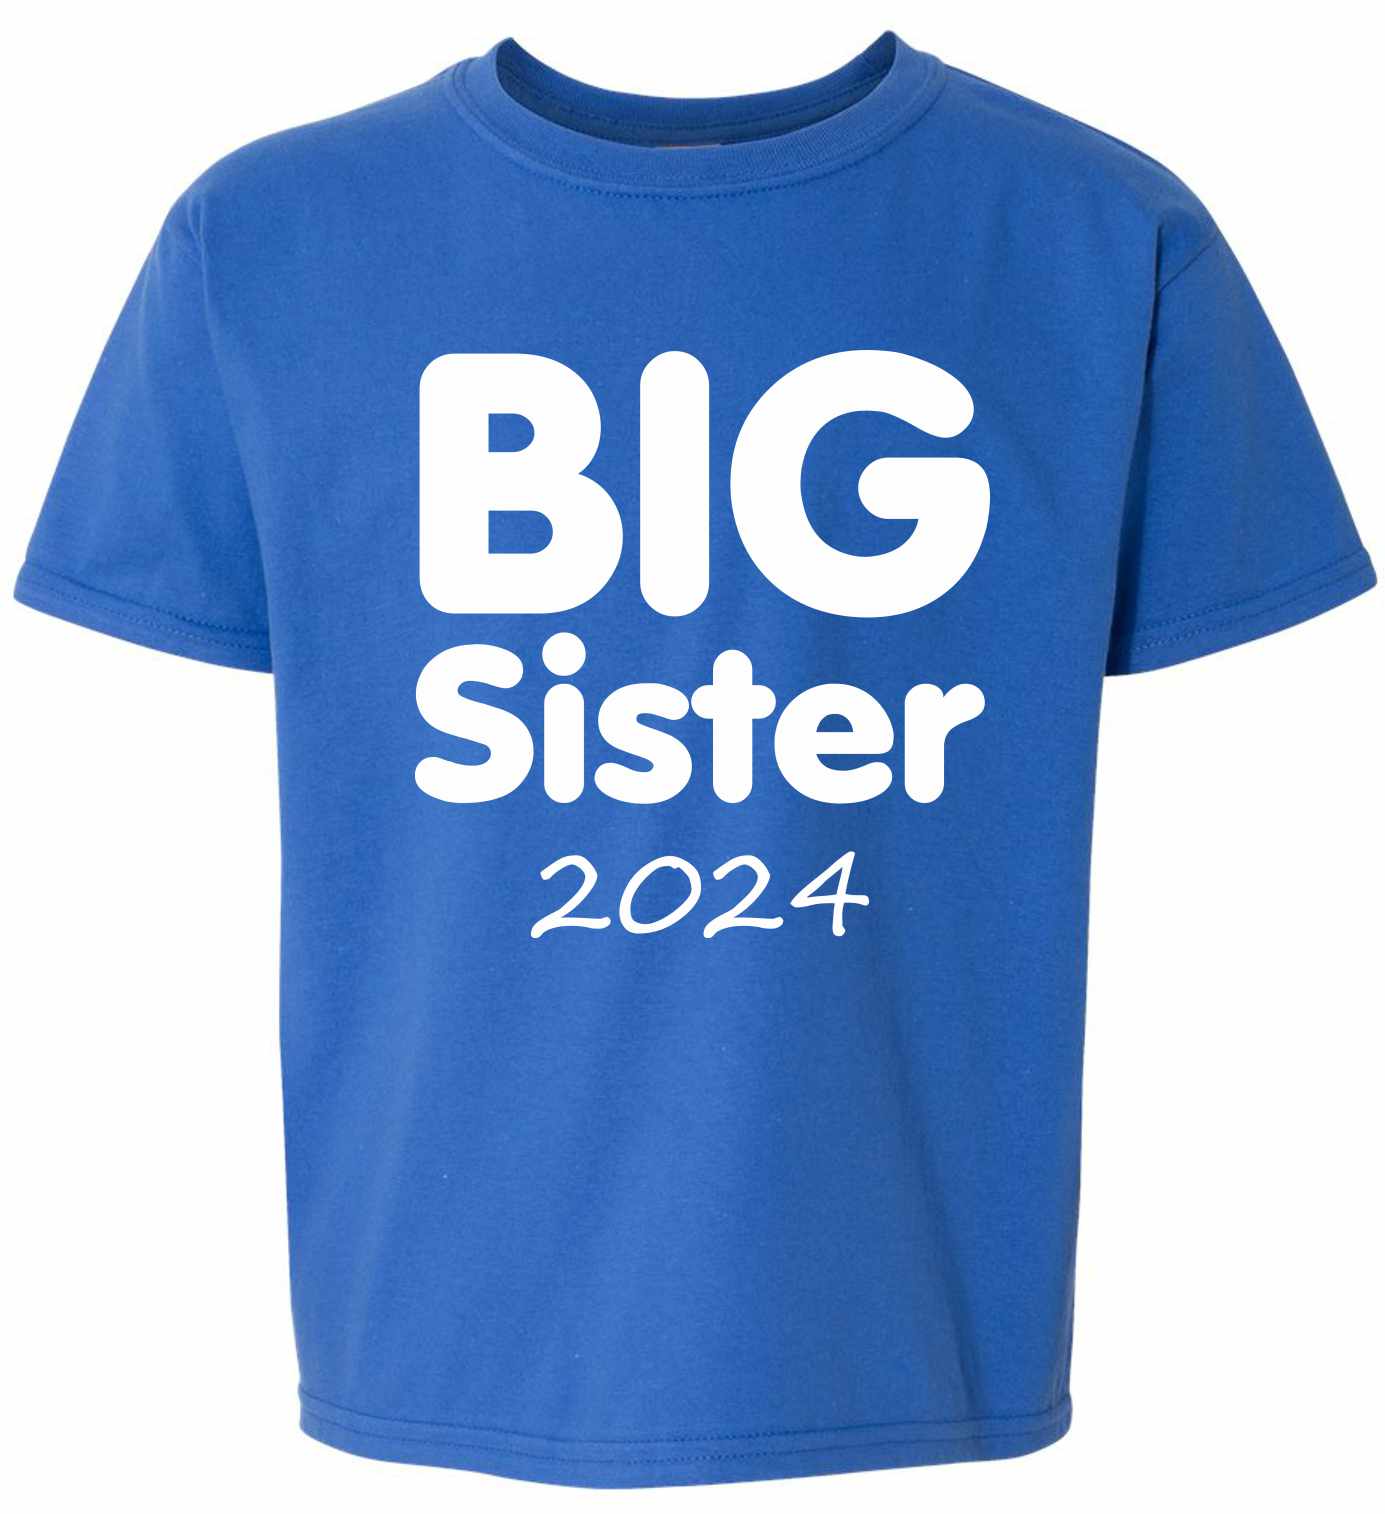 Big Sister 2024 on Kids T-Shirt (#1377-201)